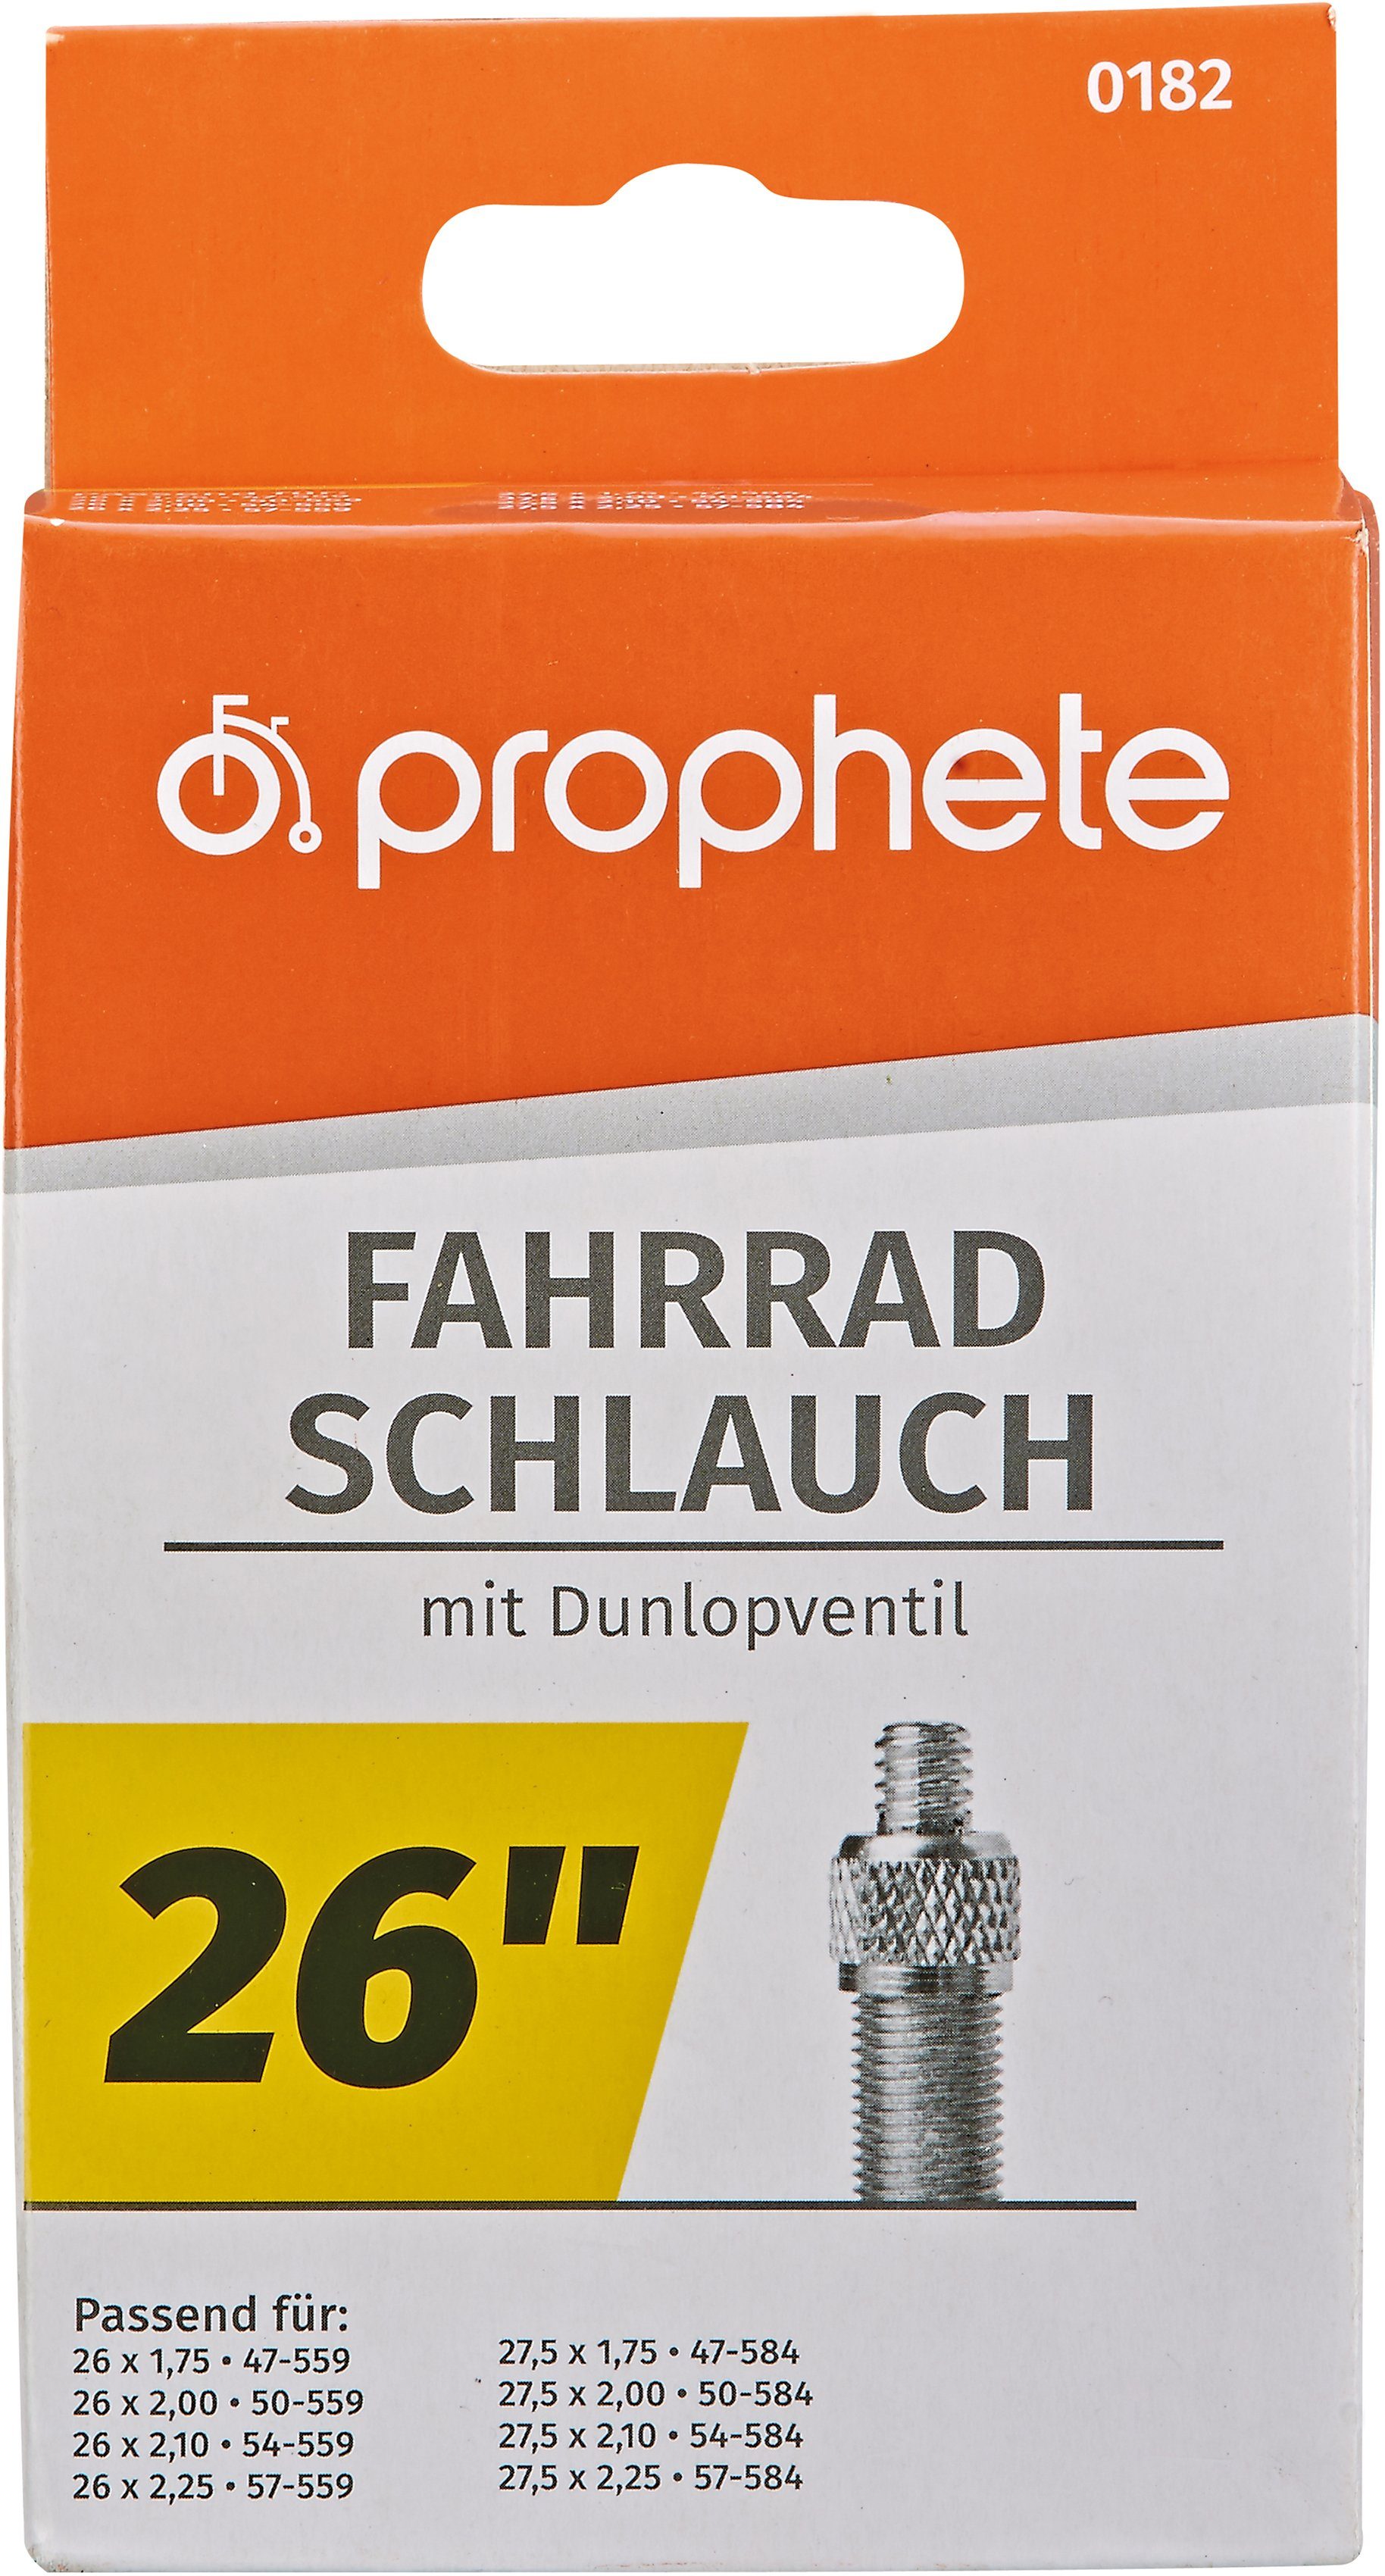 Prophete Fahrradschlauch Fahrradschlauch, 26 Zoll (66,04 cm),  Premium-Qualität